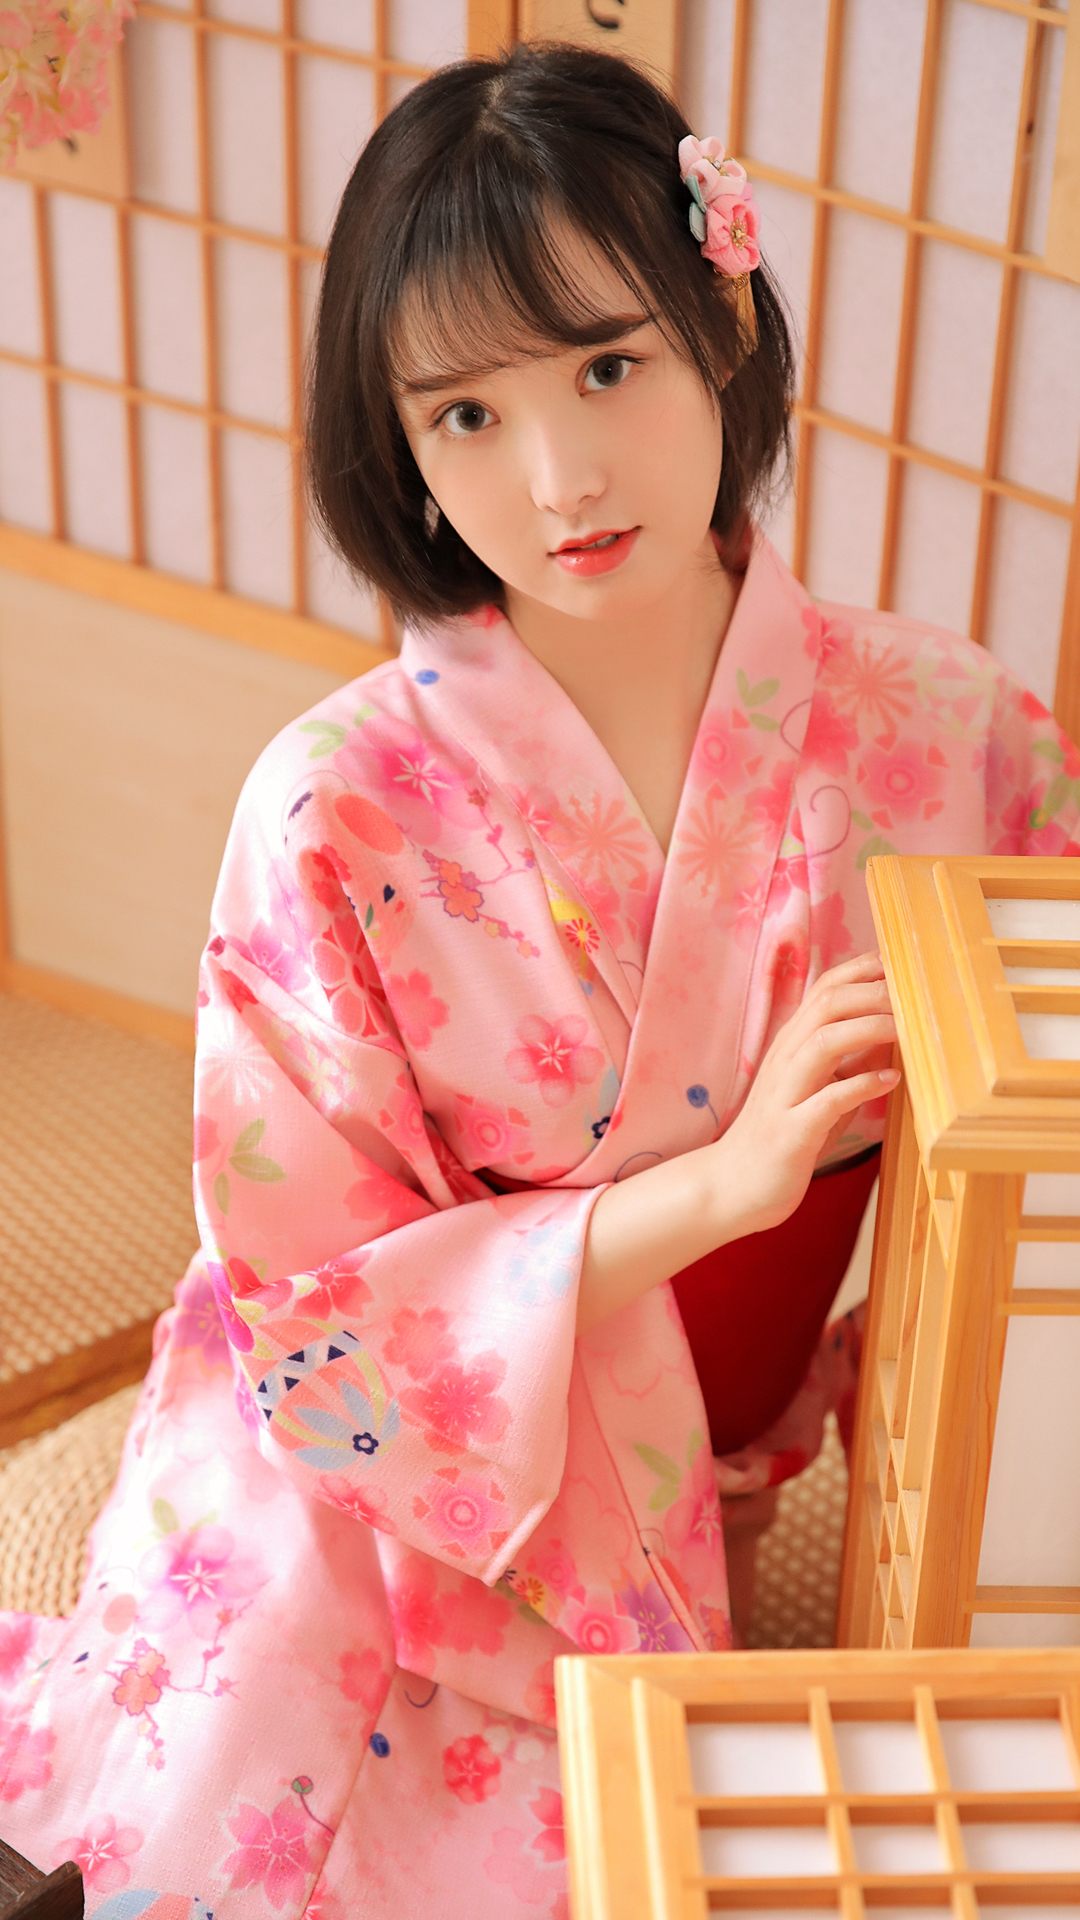 日系和服美女图片 第一张